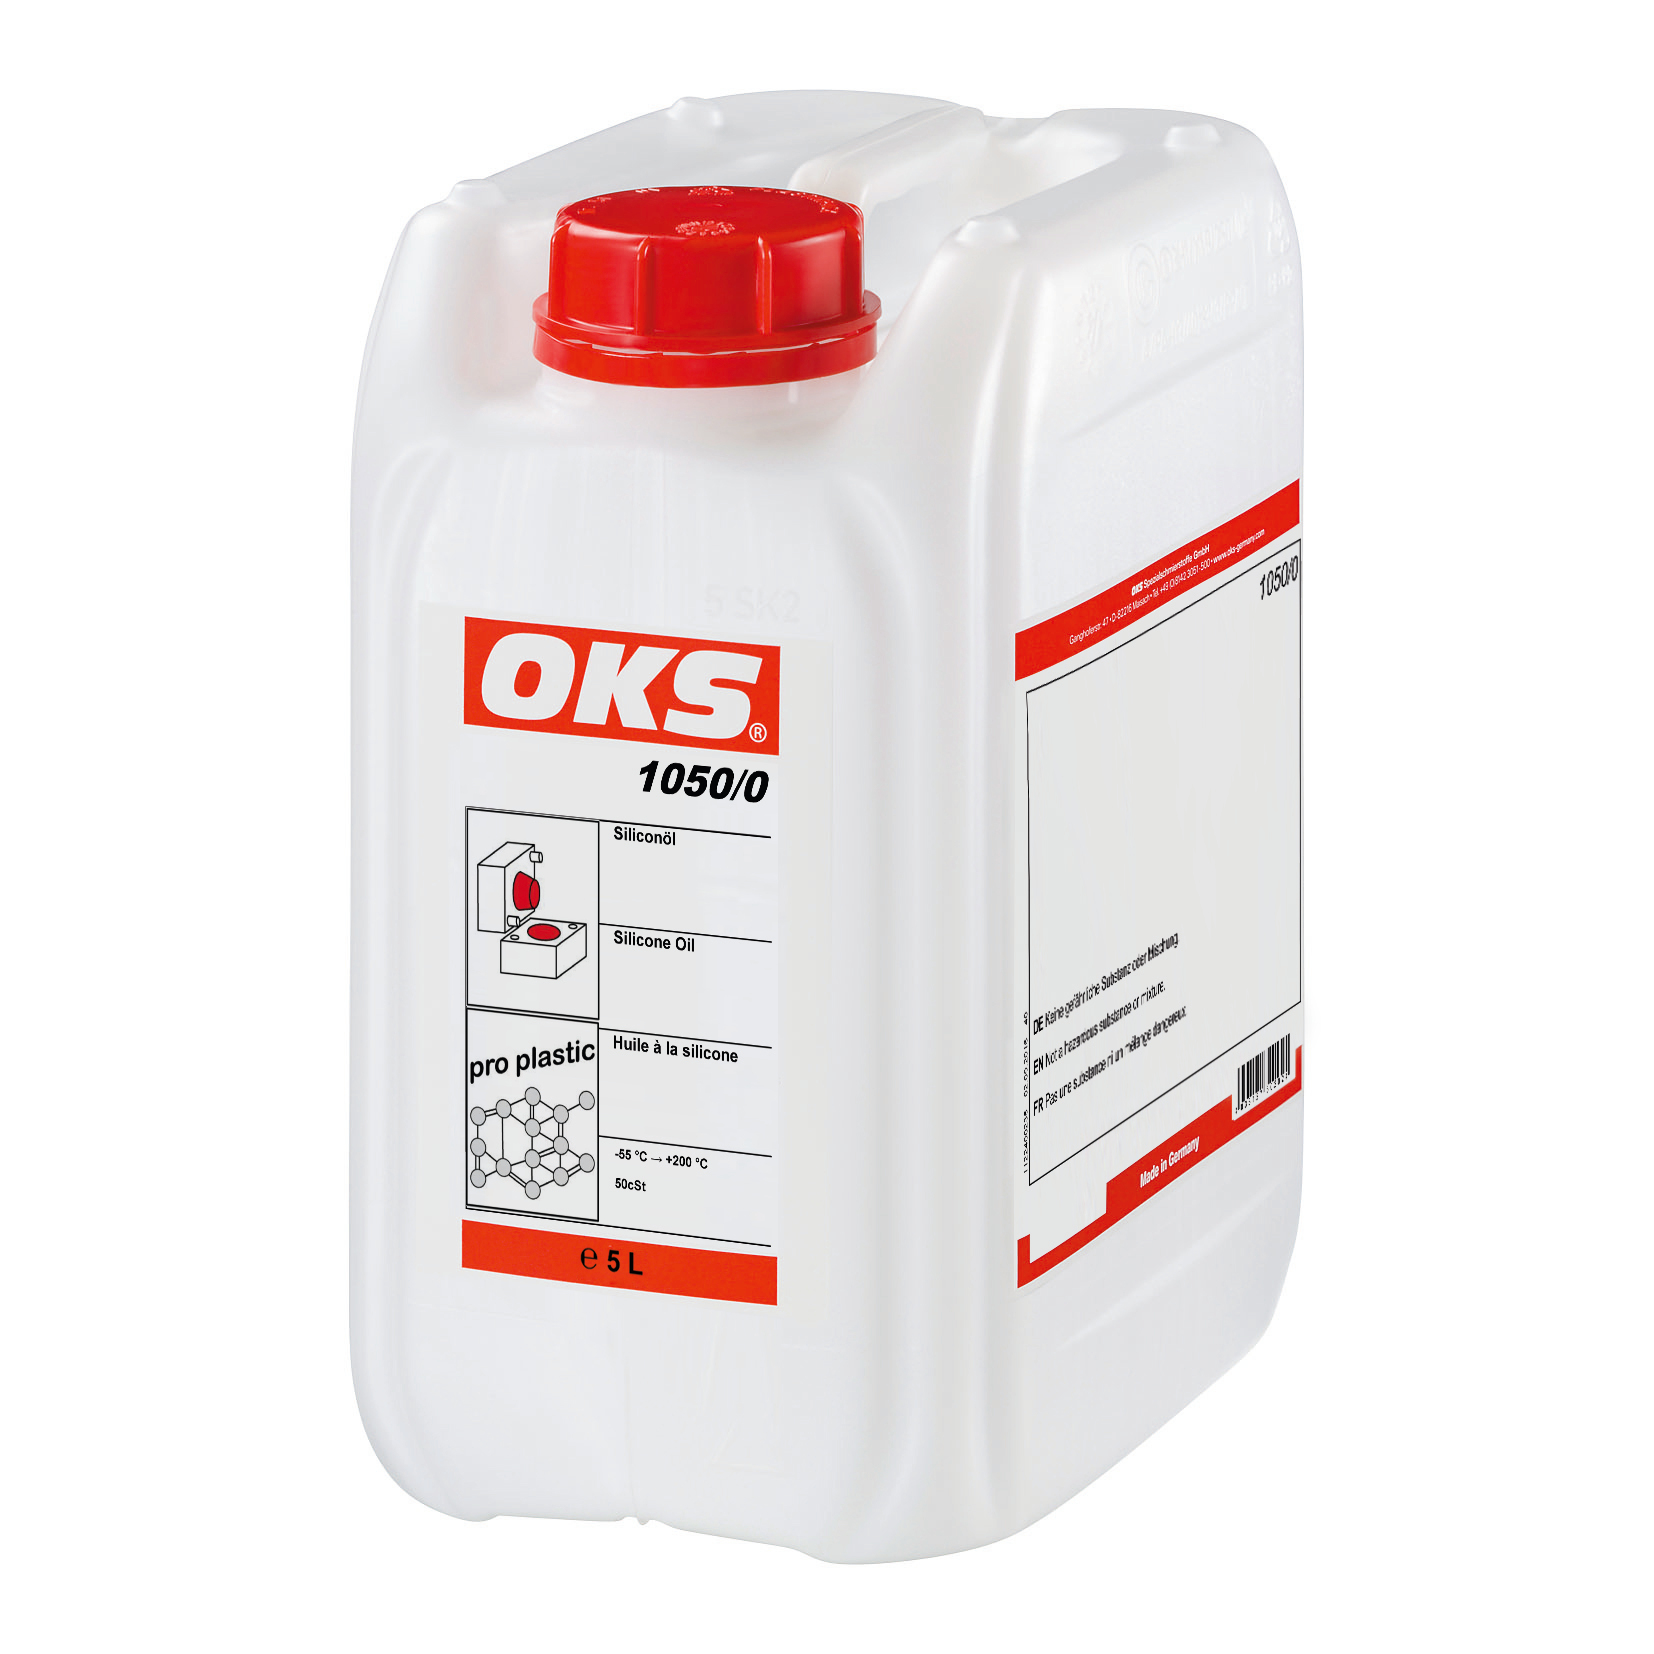 OKS1050-5 OKS 1050/0 is een siliconenolie en zeer geschikt als glij- en lossingsmiddel voor kunststoffen en elastomeren.